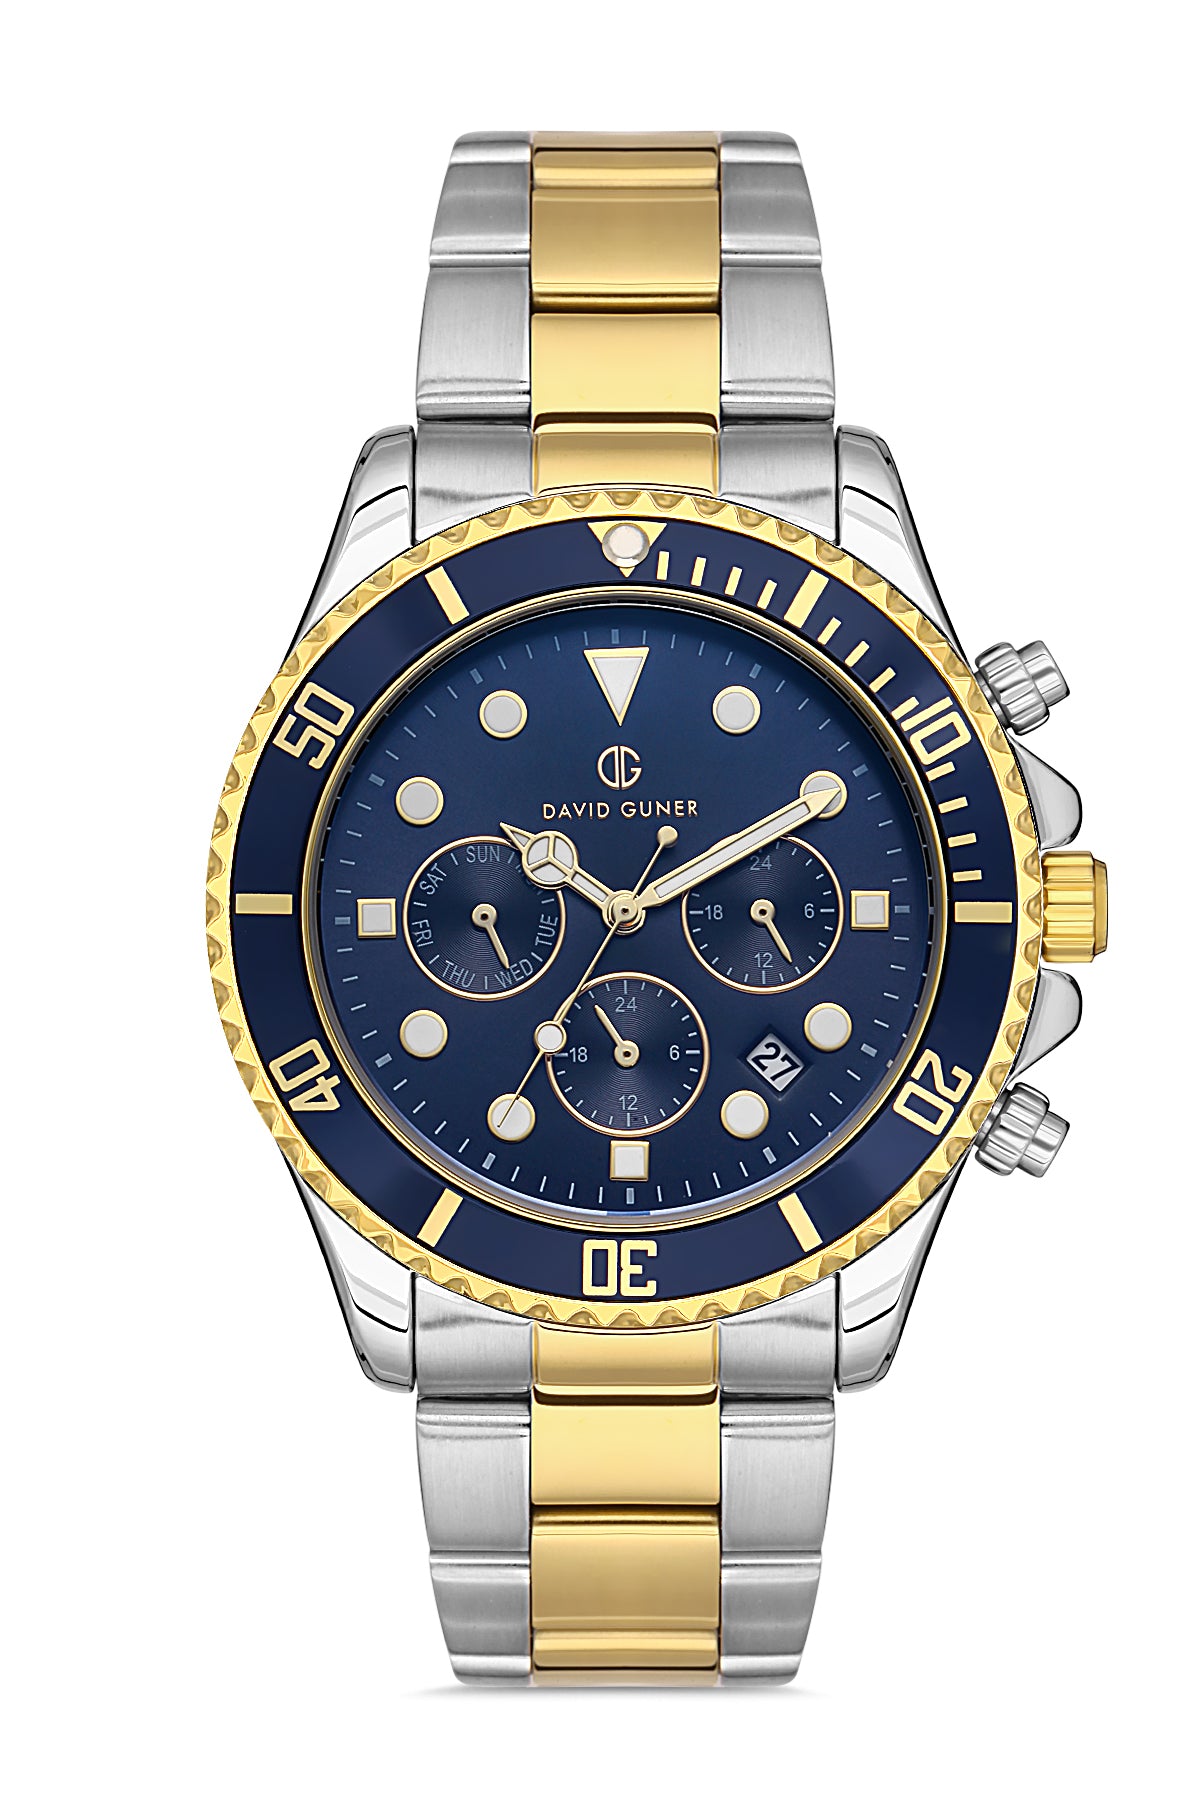 DAVID GUNER Dark Blue Dial Yellow White Coated Multifunctional Men's Wristwatch